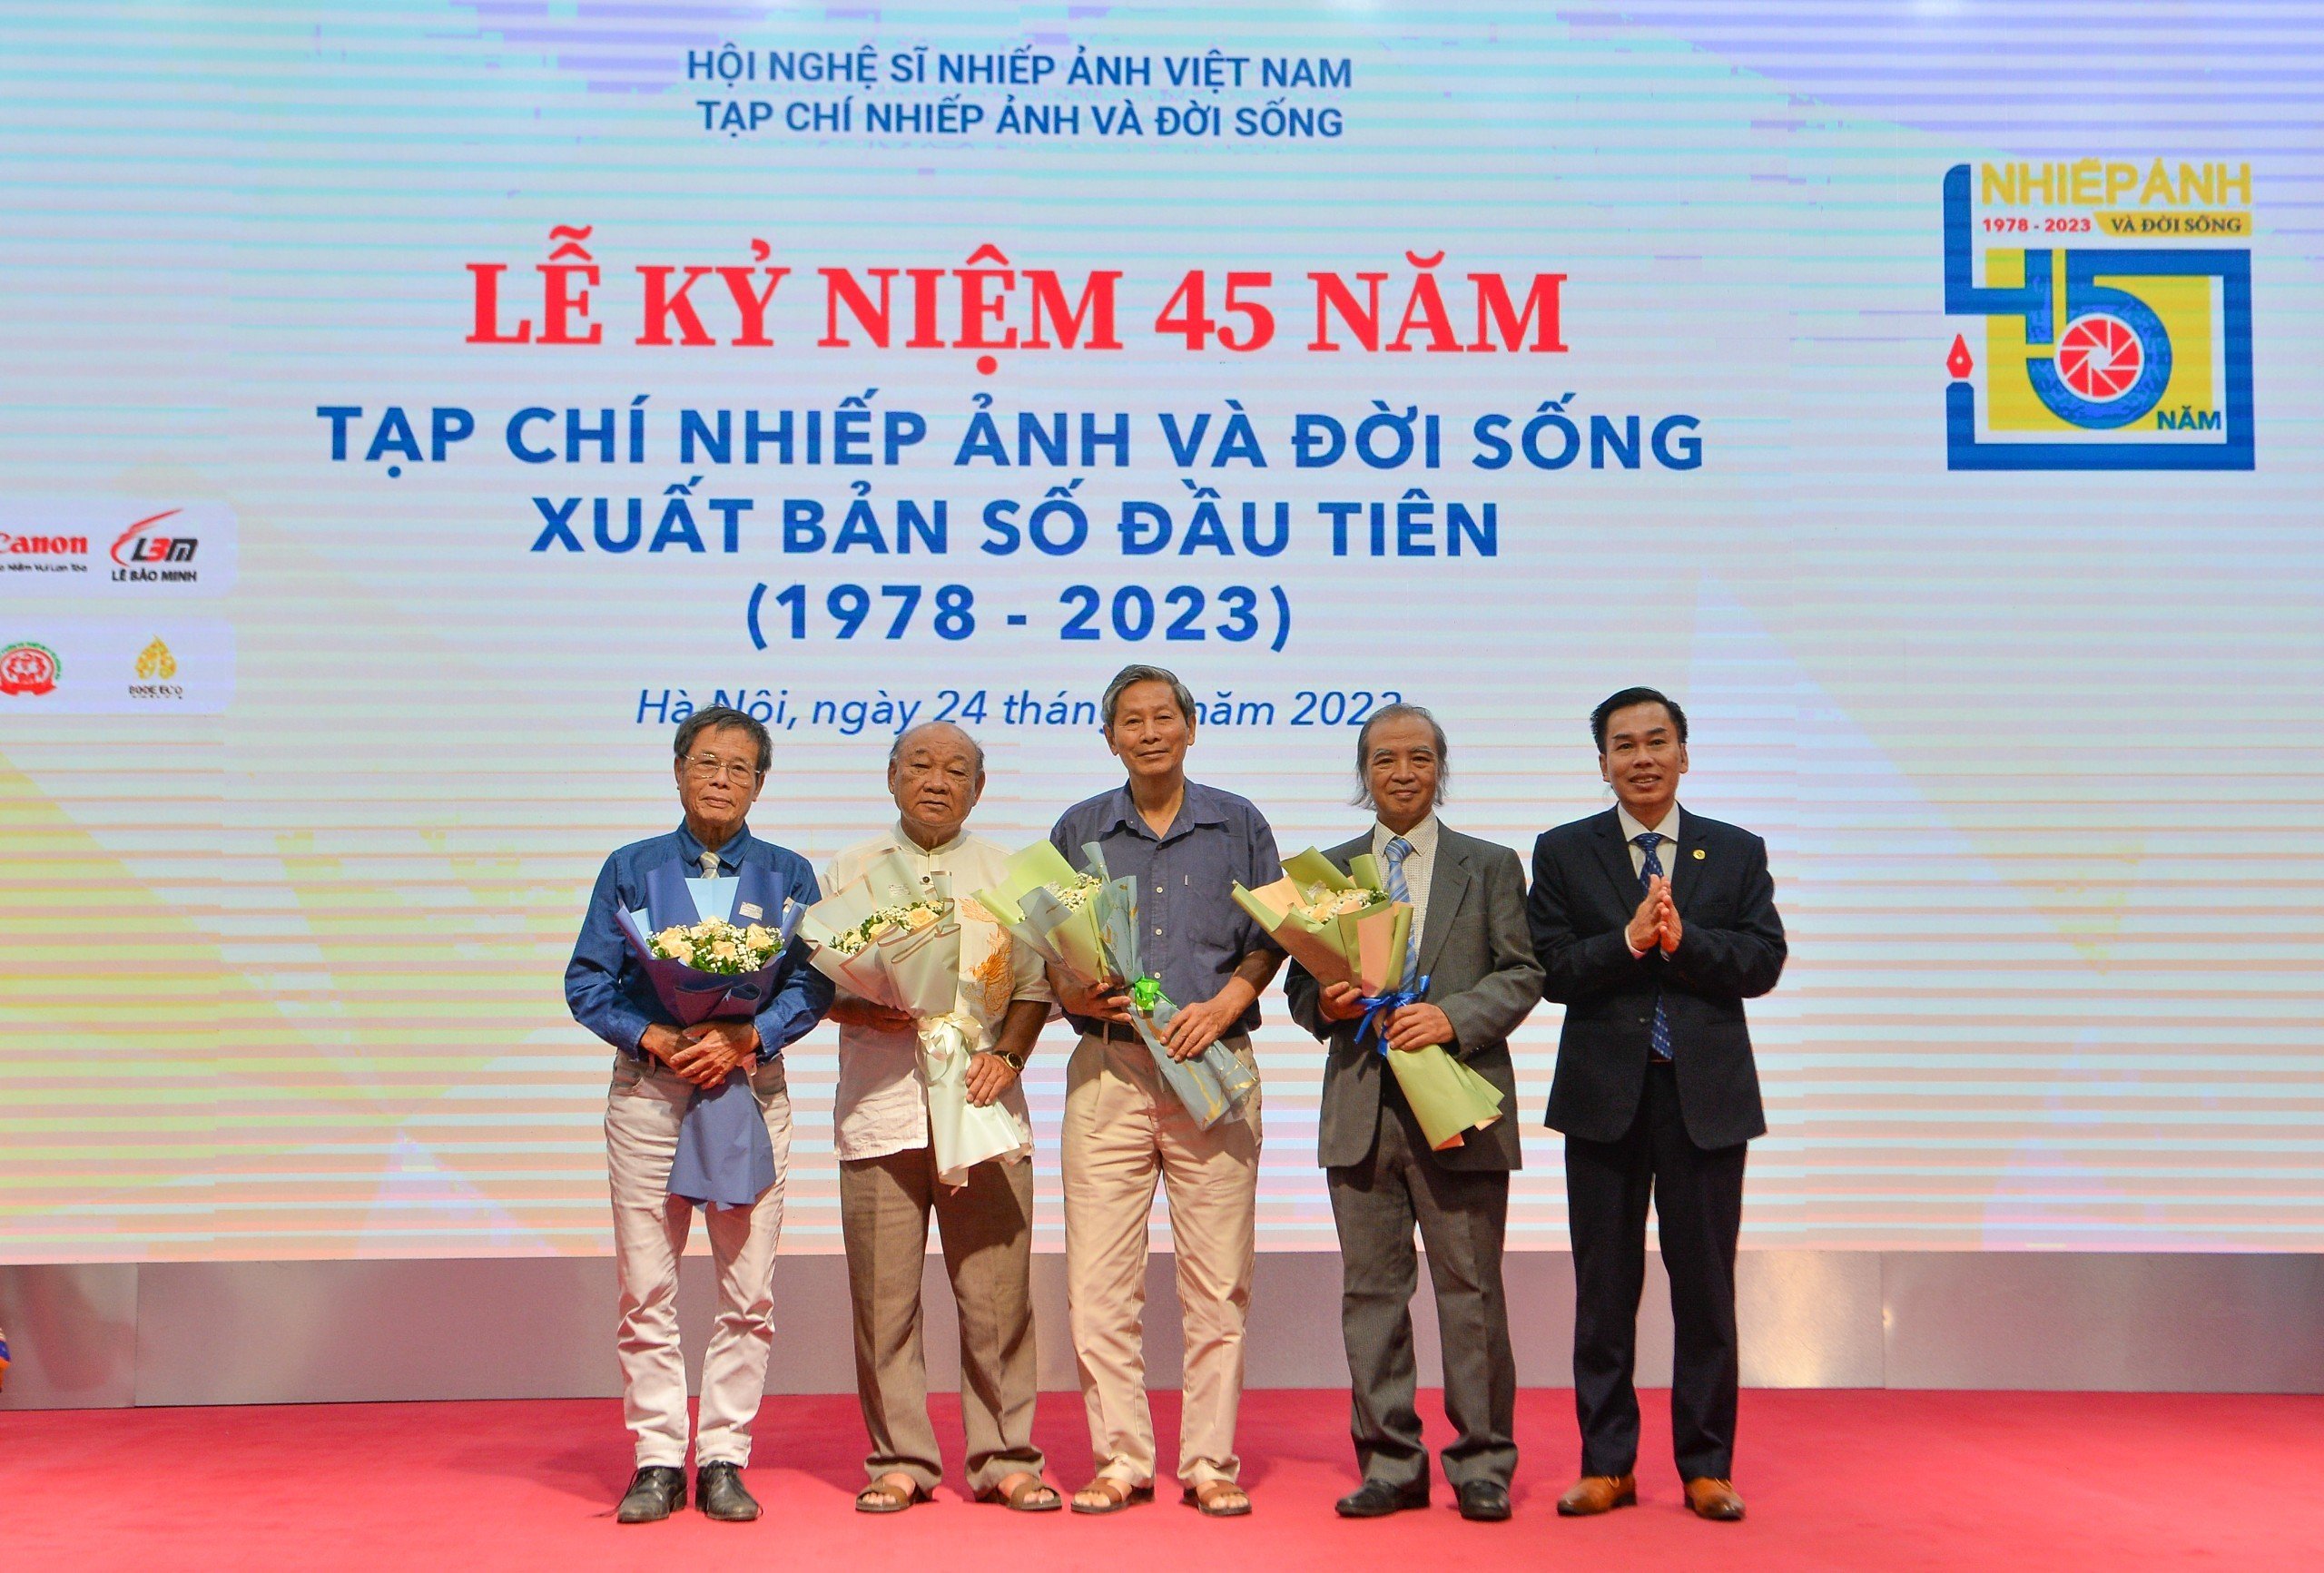 45 năm với sứ mệnh phản ánh sinh động các hoạt động nhiếp ảnh Việt Nam - 3